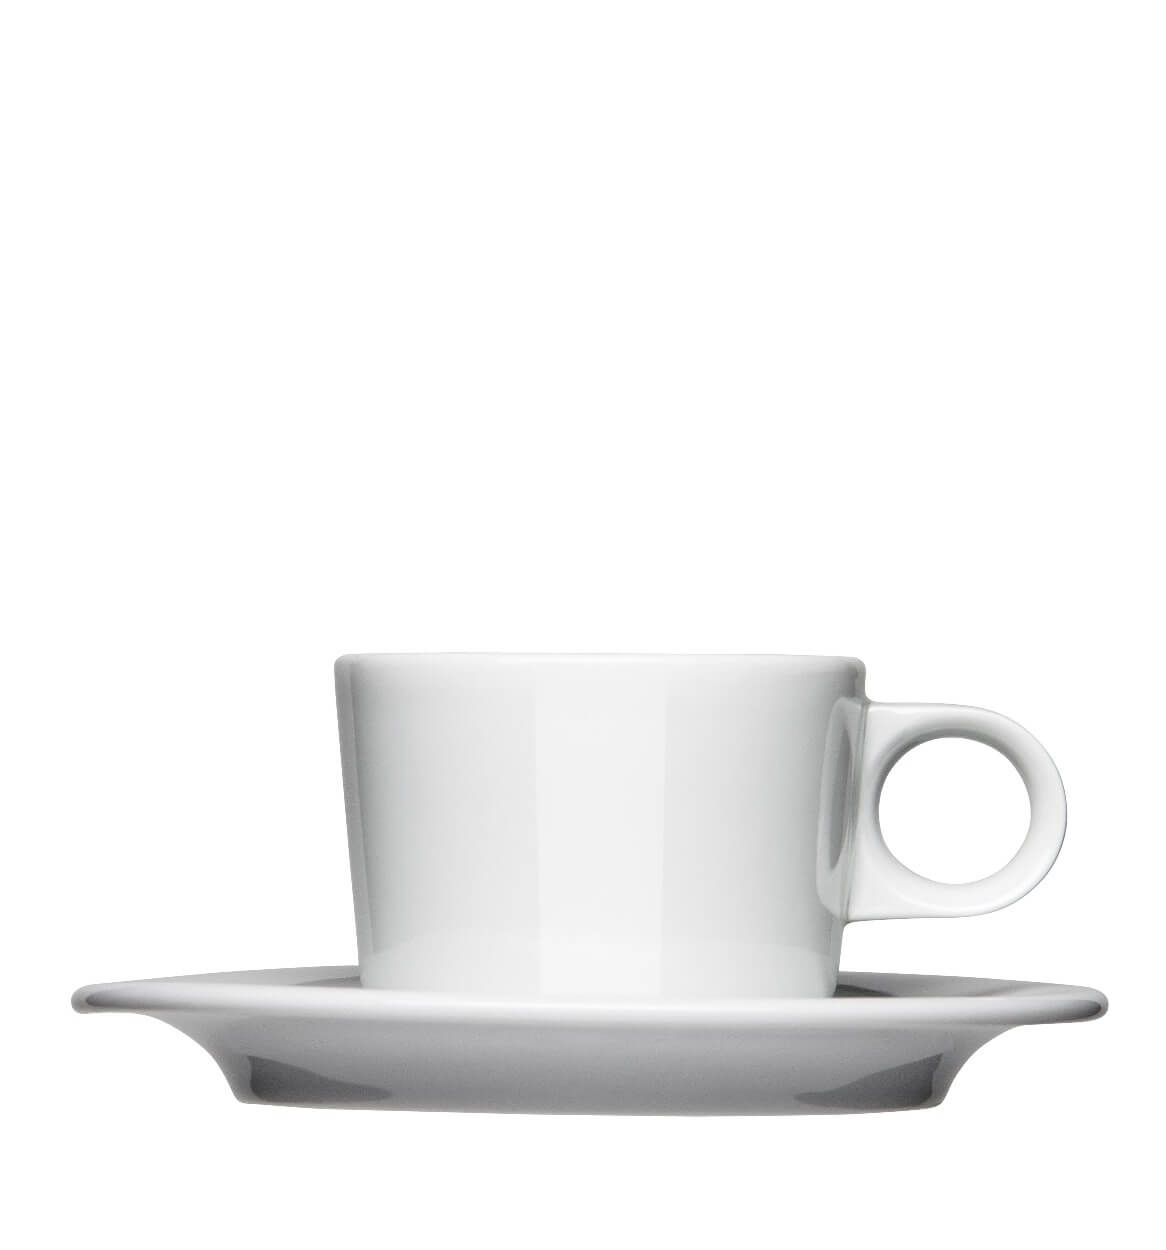 Kaffeetasse Form 202 zum bedrucken mit einem Logo oder einer Grafik als Werbegeschenk, Werbeartikel oder Werbemittel